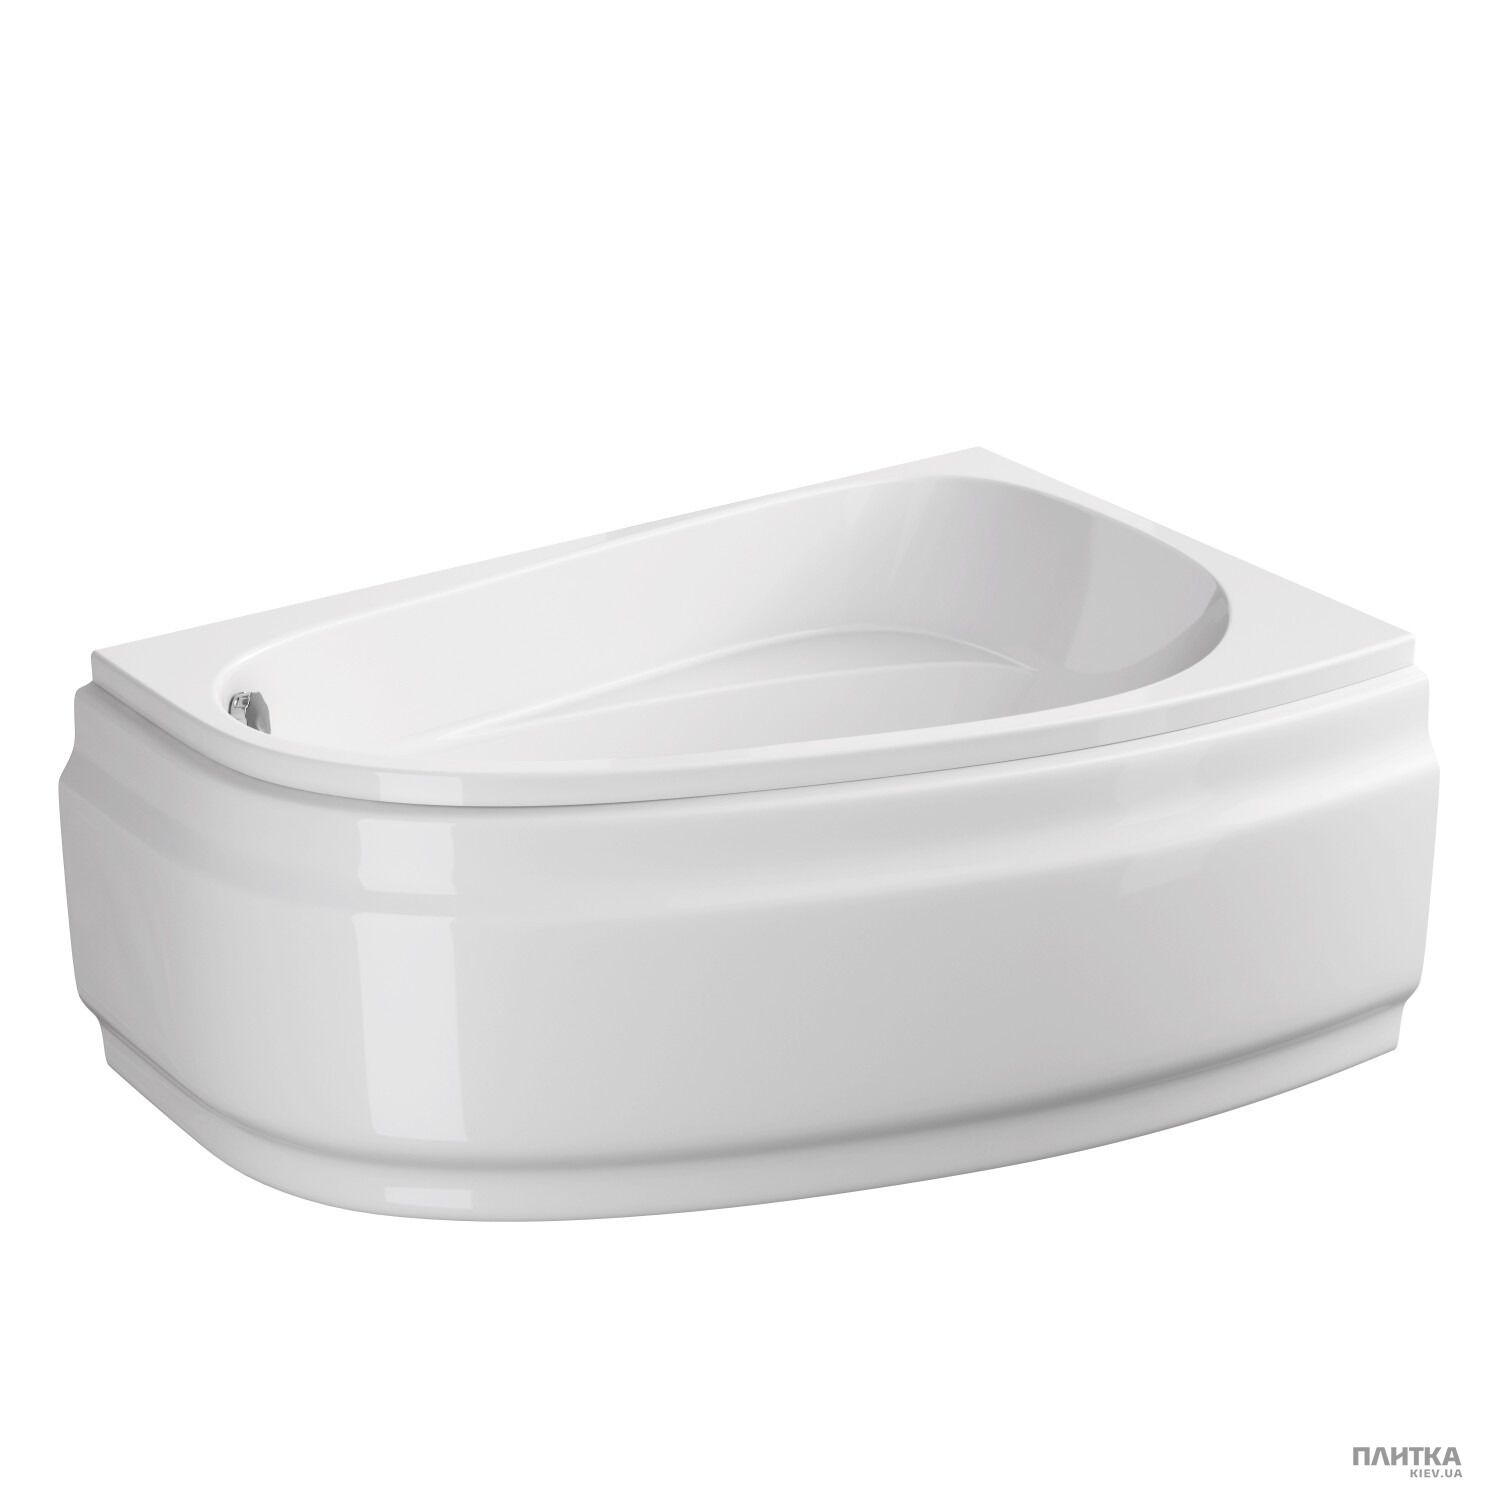 Акрилова ванна Cersanit Joanna New 140x90 см права, асиметрична білий